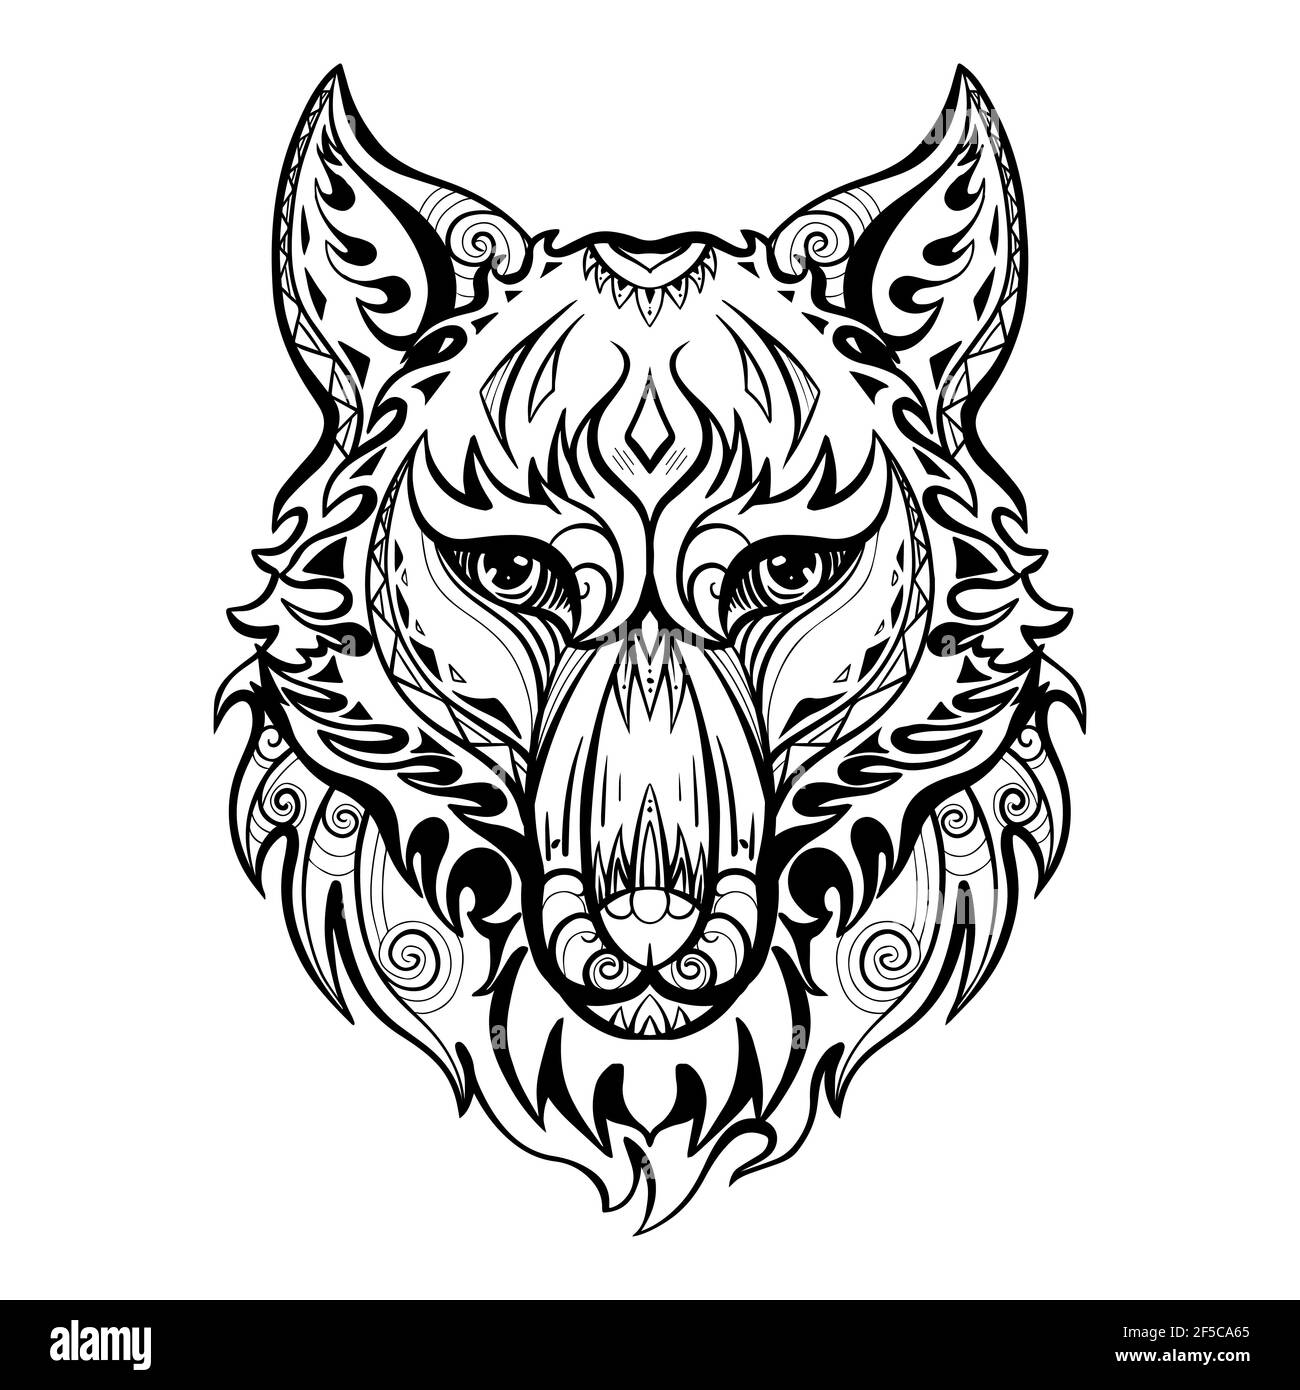 Unify Tattoo Company : Tattoos : Portrait : wolf tattoo